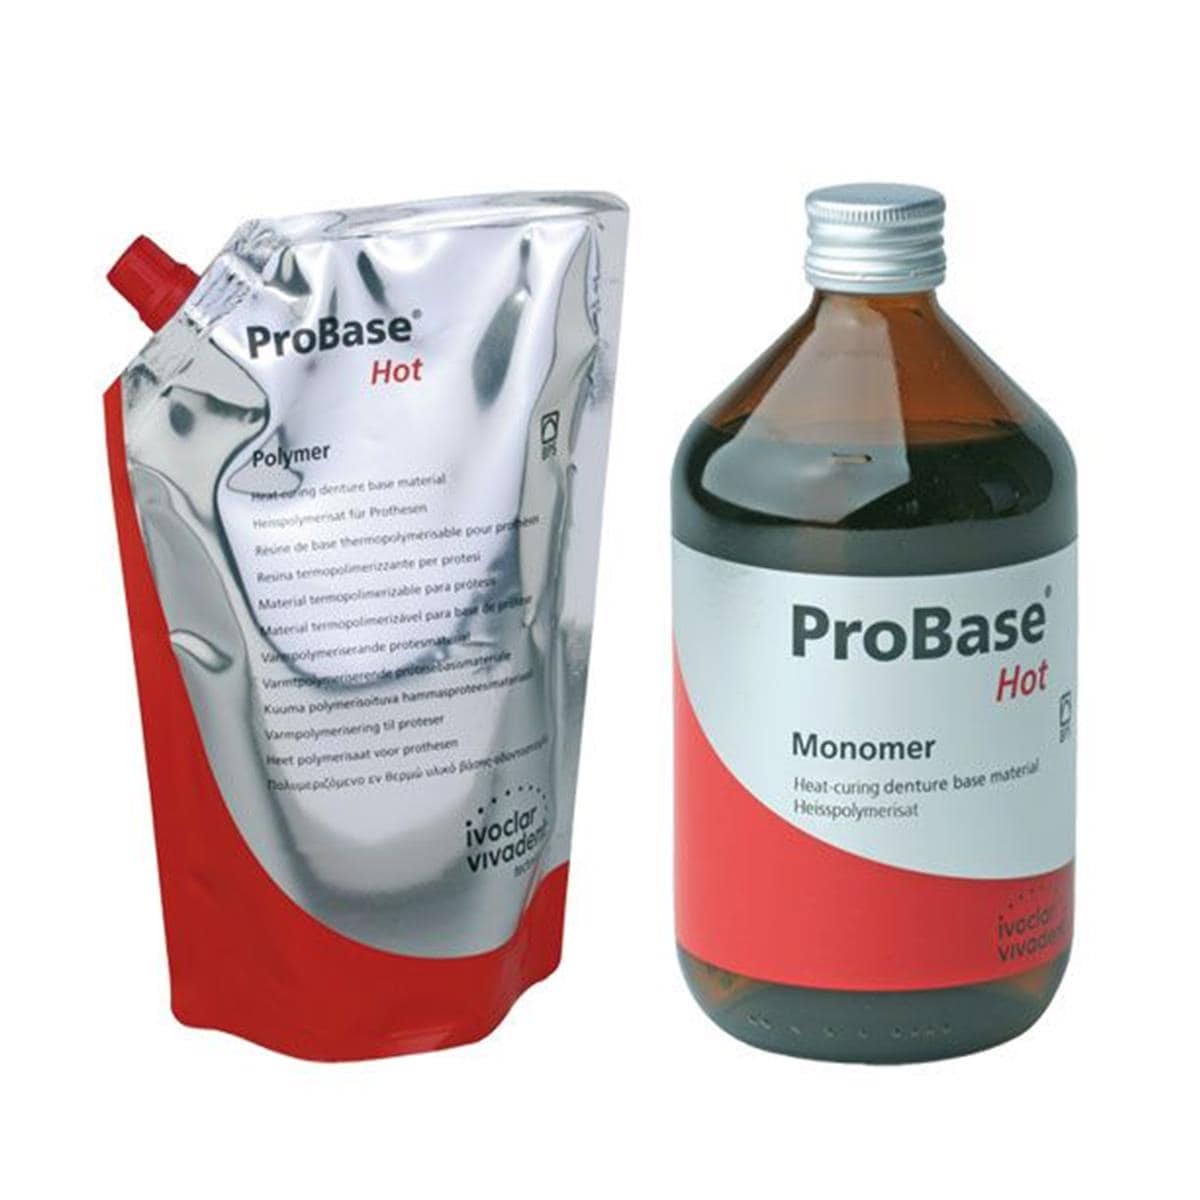 Probase Hot IVOCLAR - La portion de 1 kg + 500 ml - Pink-V